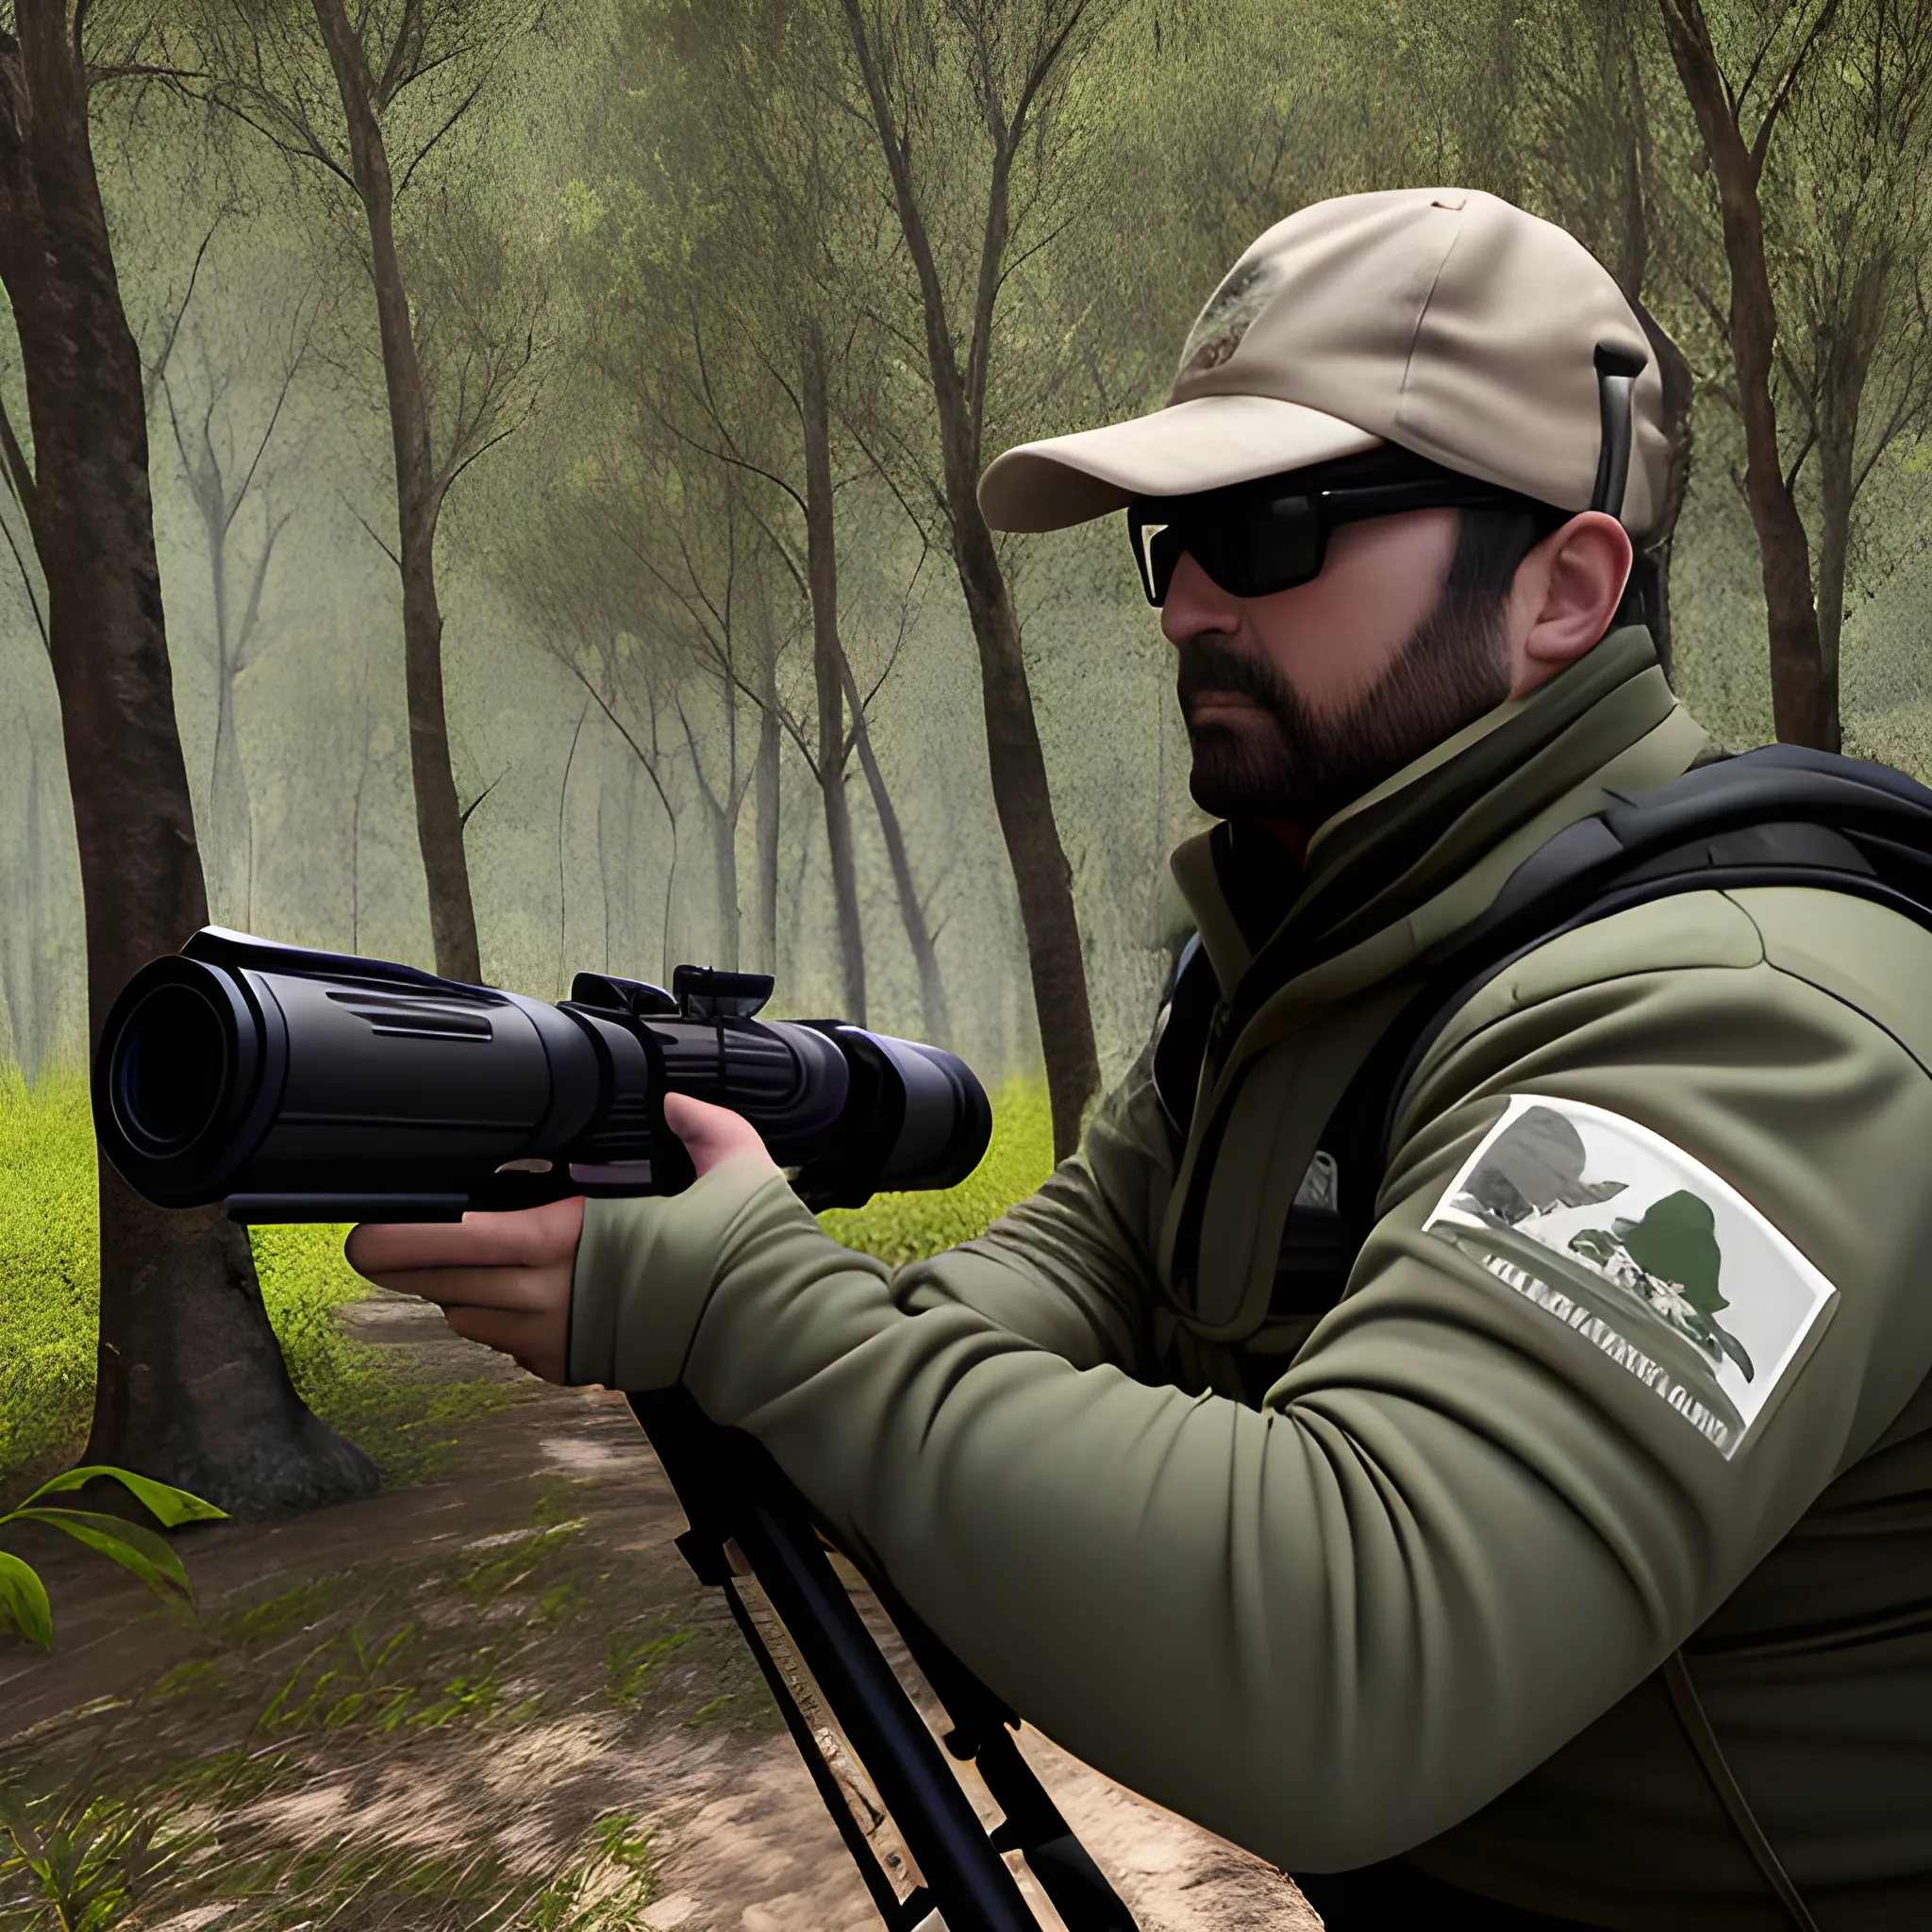 cazador en un bosque frondozo a punto de disparar a un oso que lo va a atacar,  3D